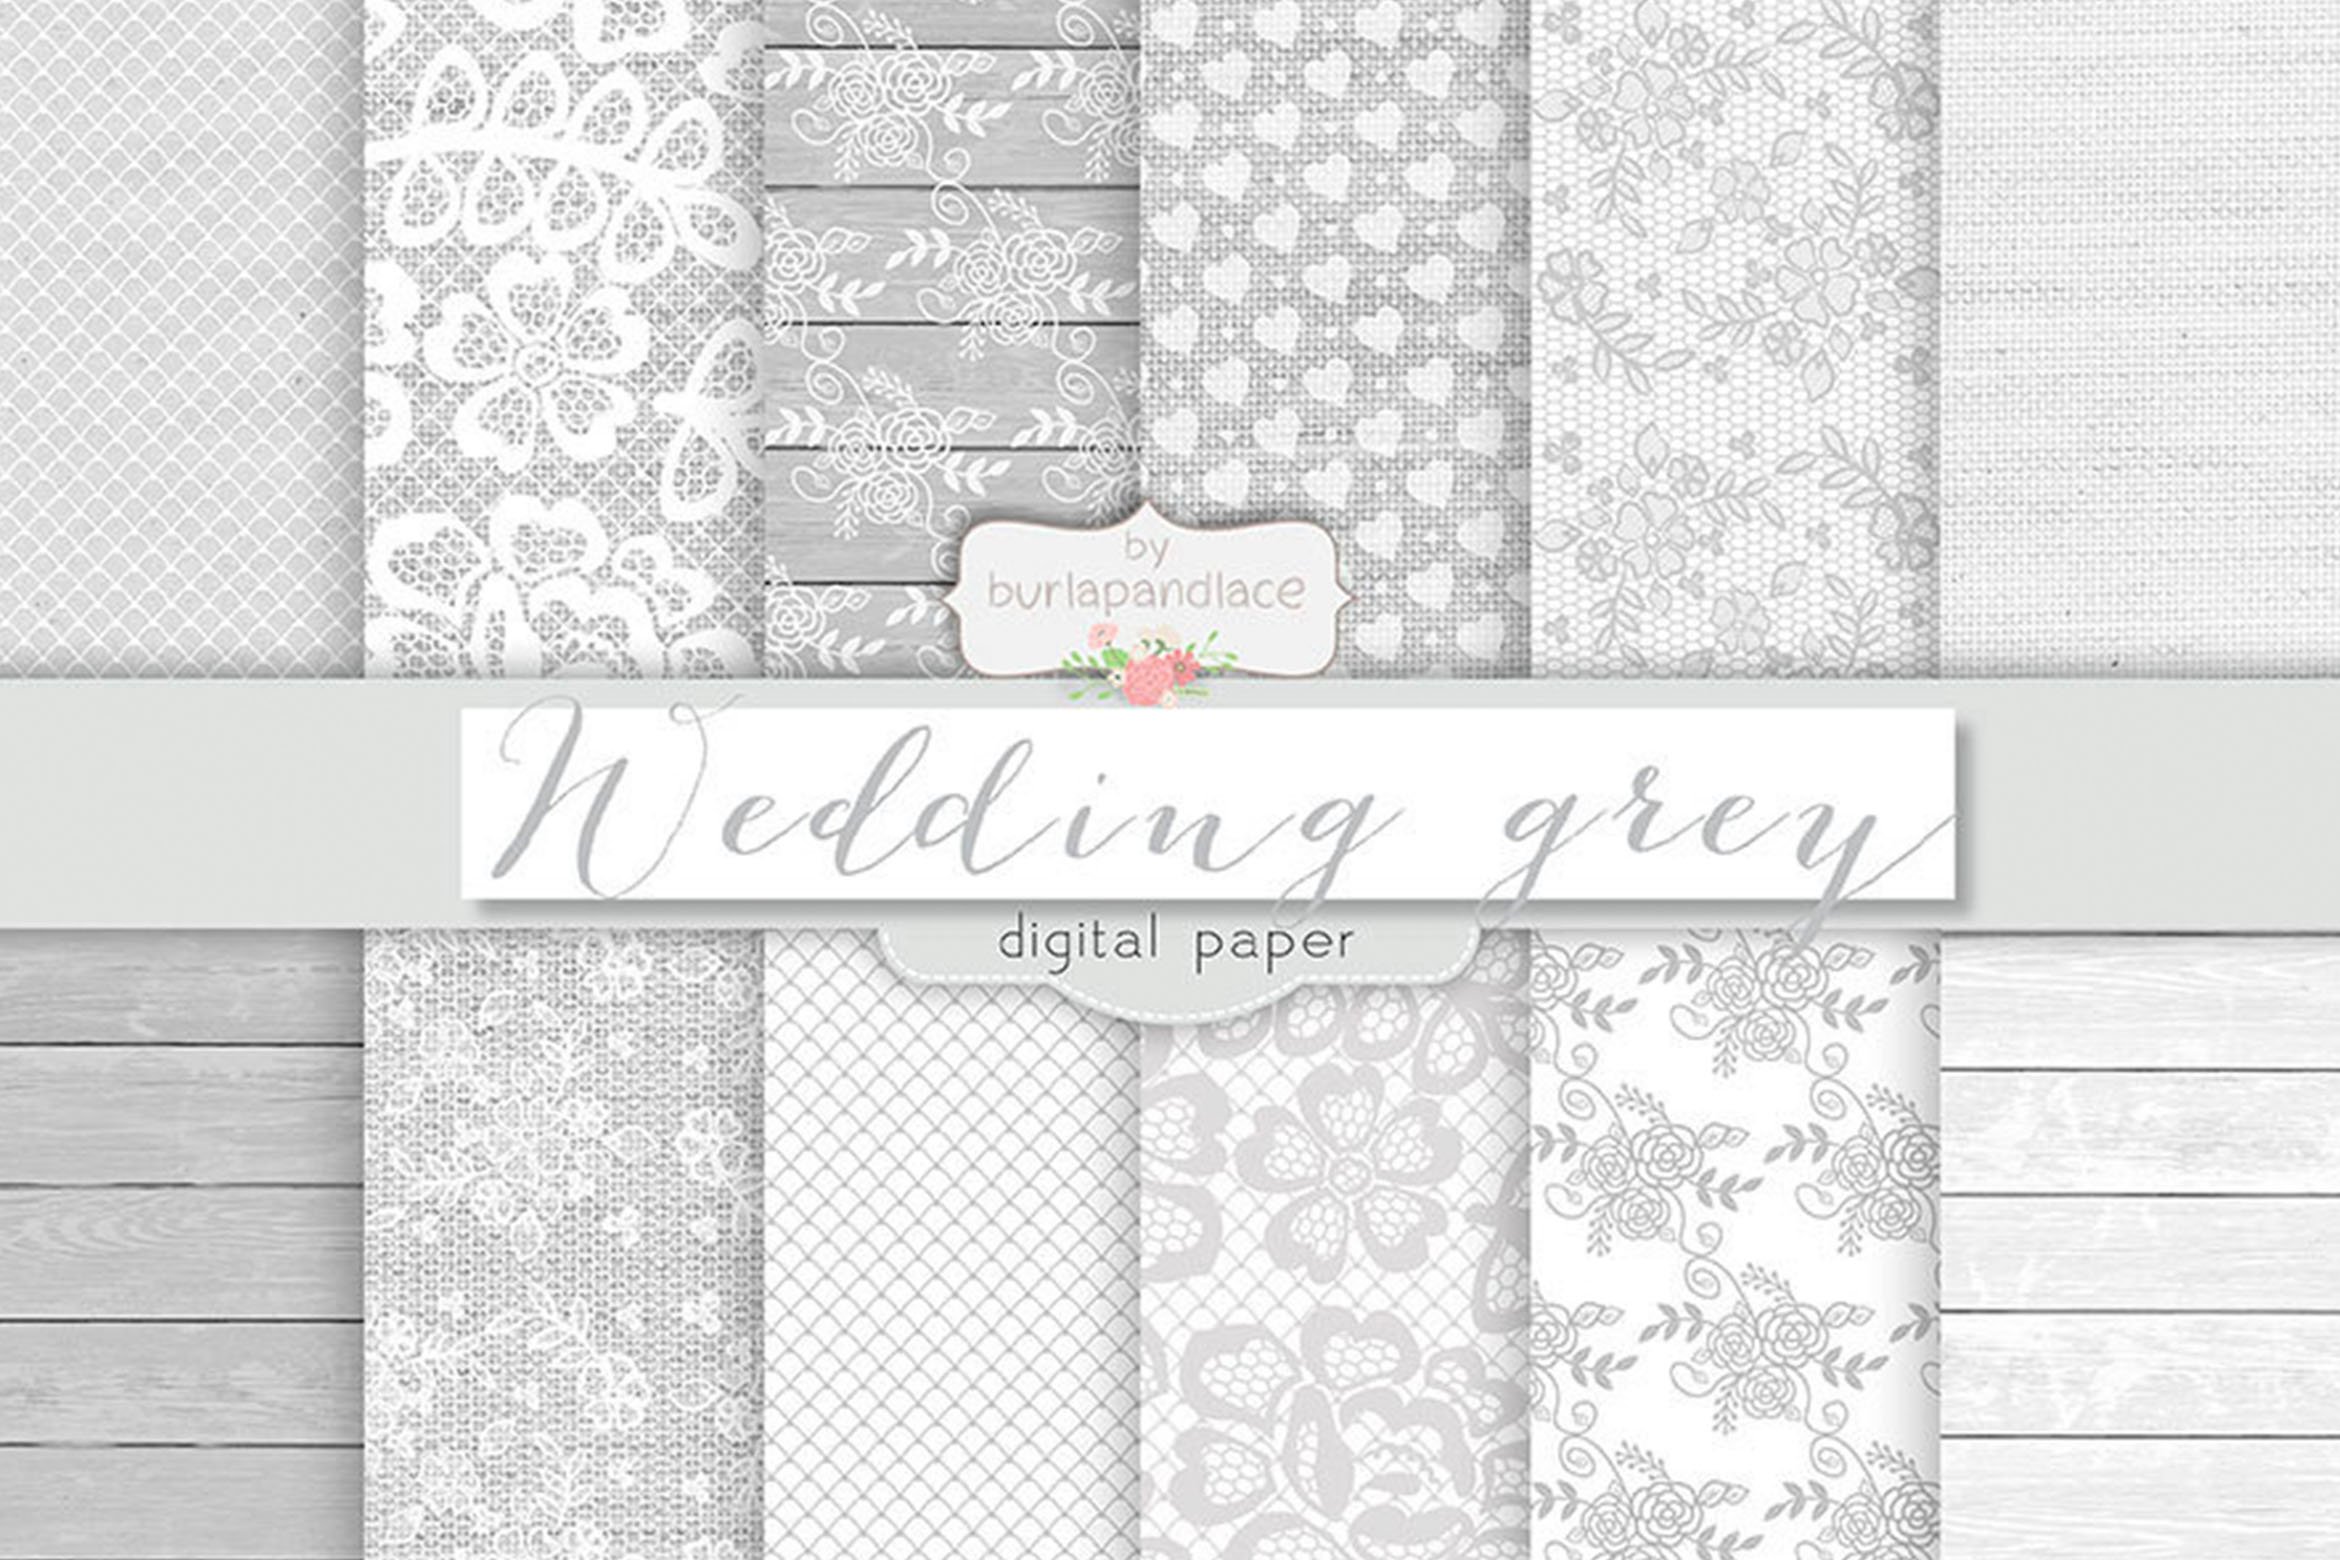 Wedding Grey Digital Paper.